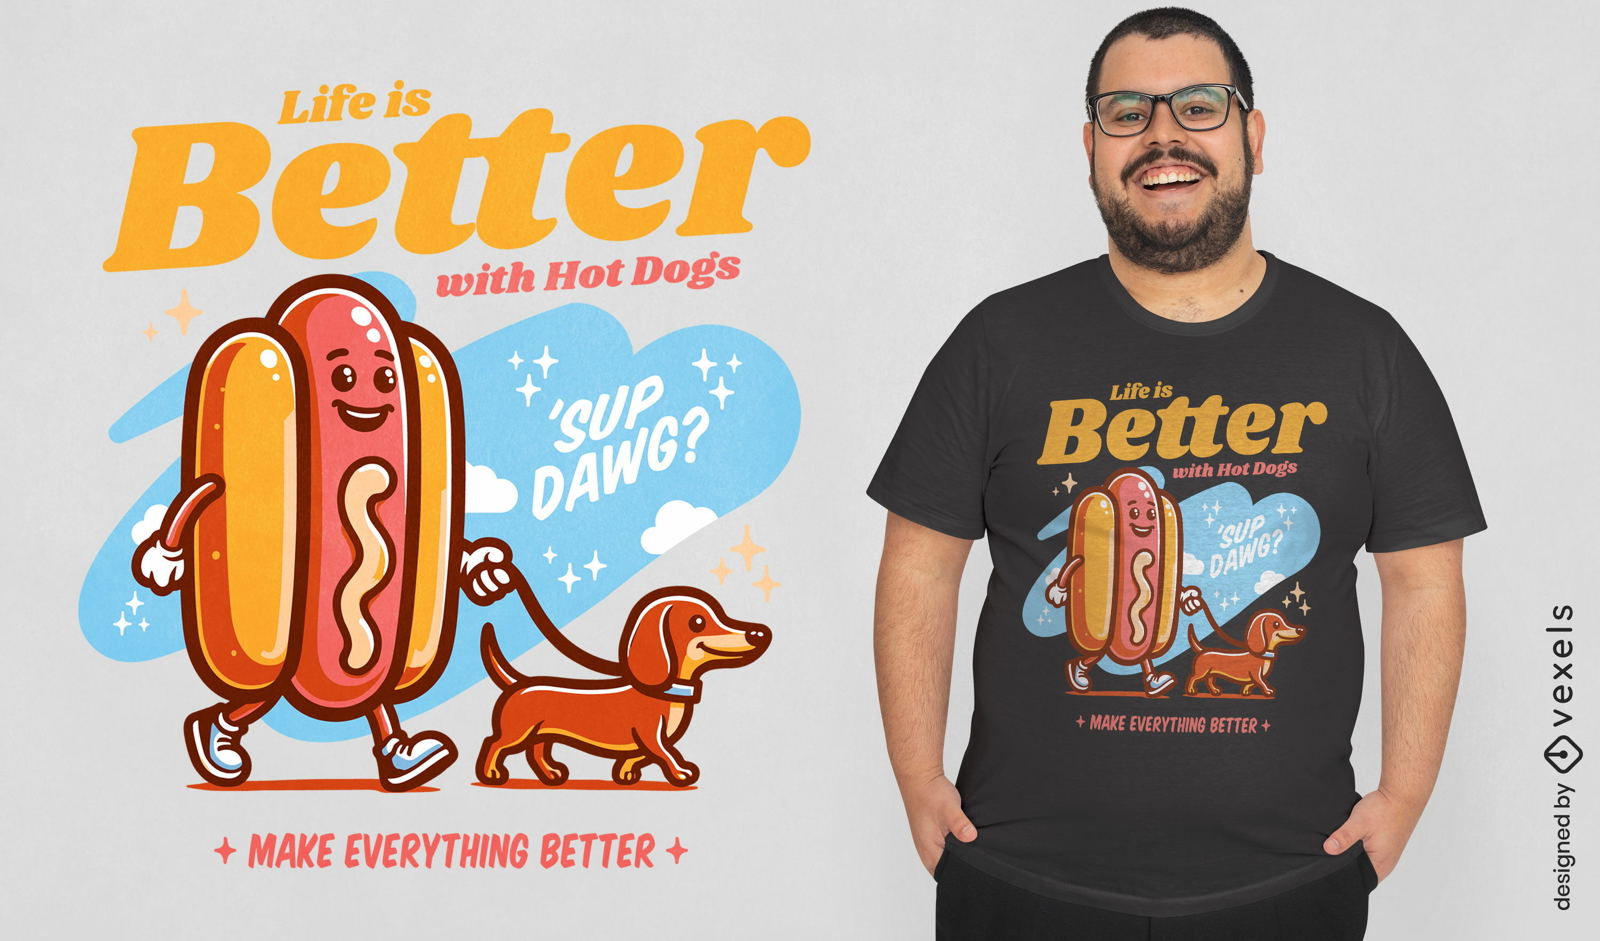 La vida es mejor con el diseño de camiseta de hot dogs.